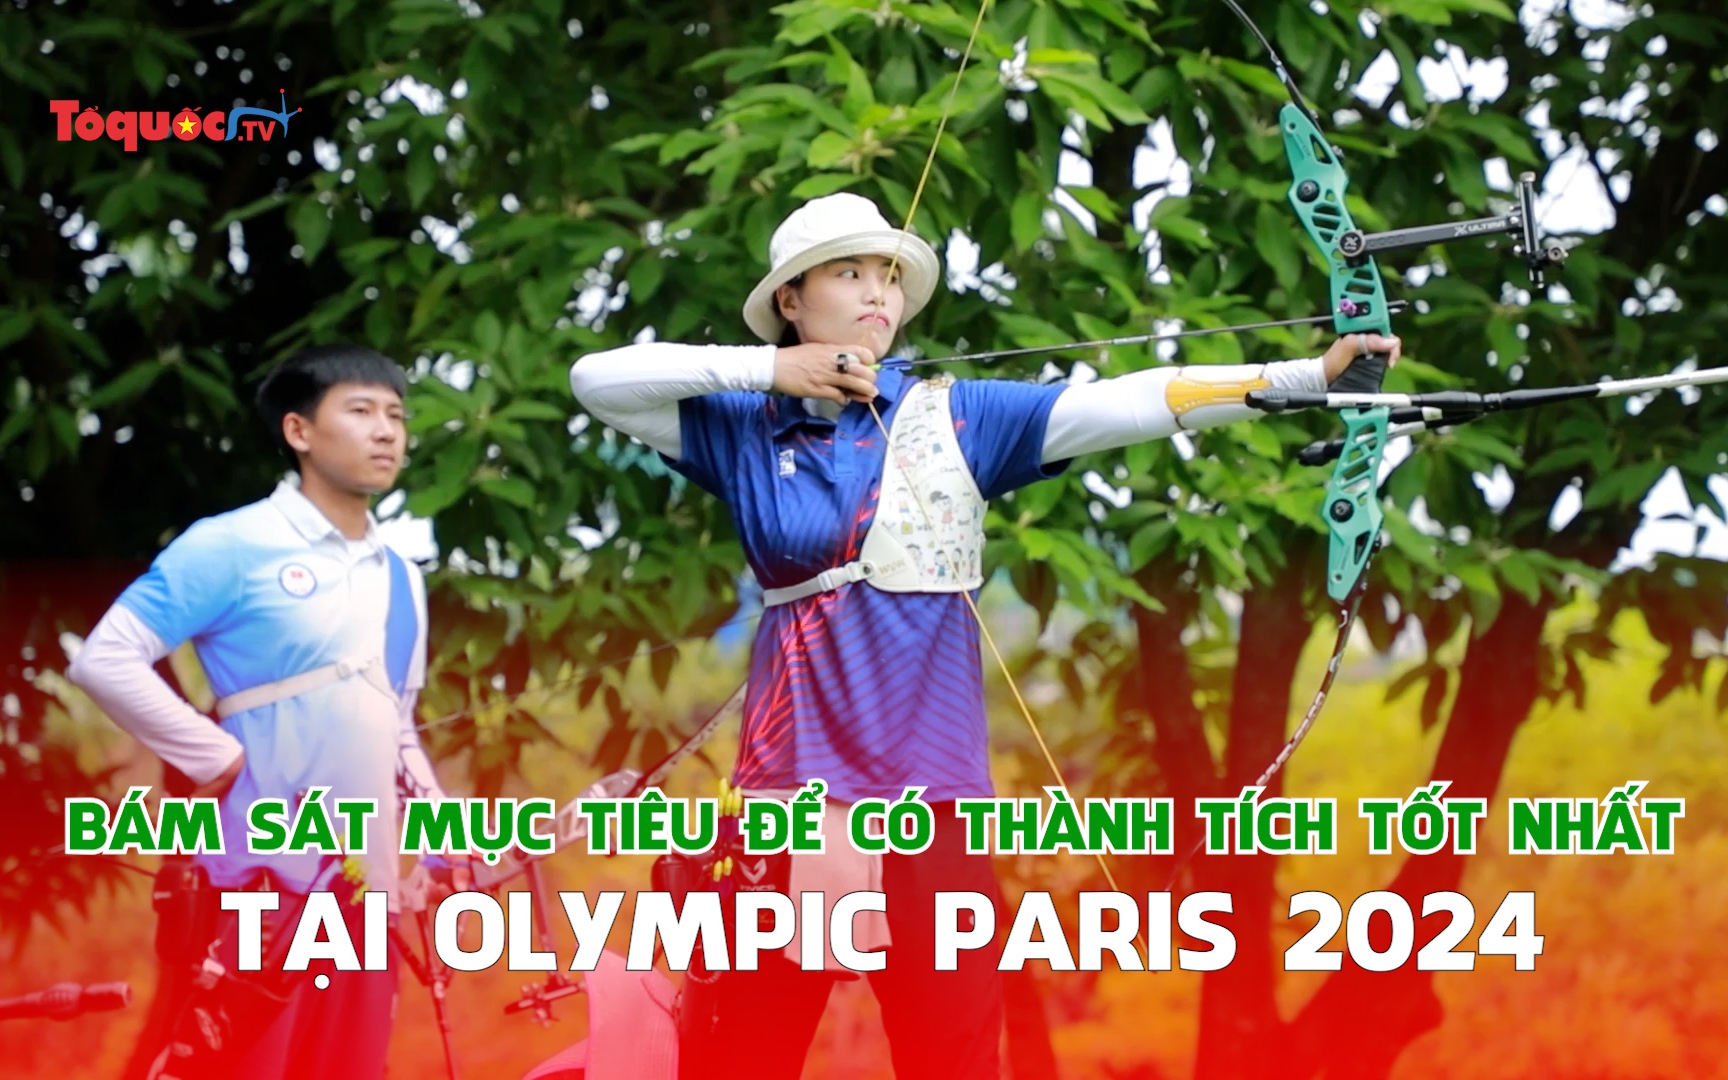 Thể thao Việt Nam: Bám sát mục tiêu để có thành tích tốt nhất tại Olympic Paris 2024